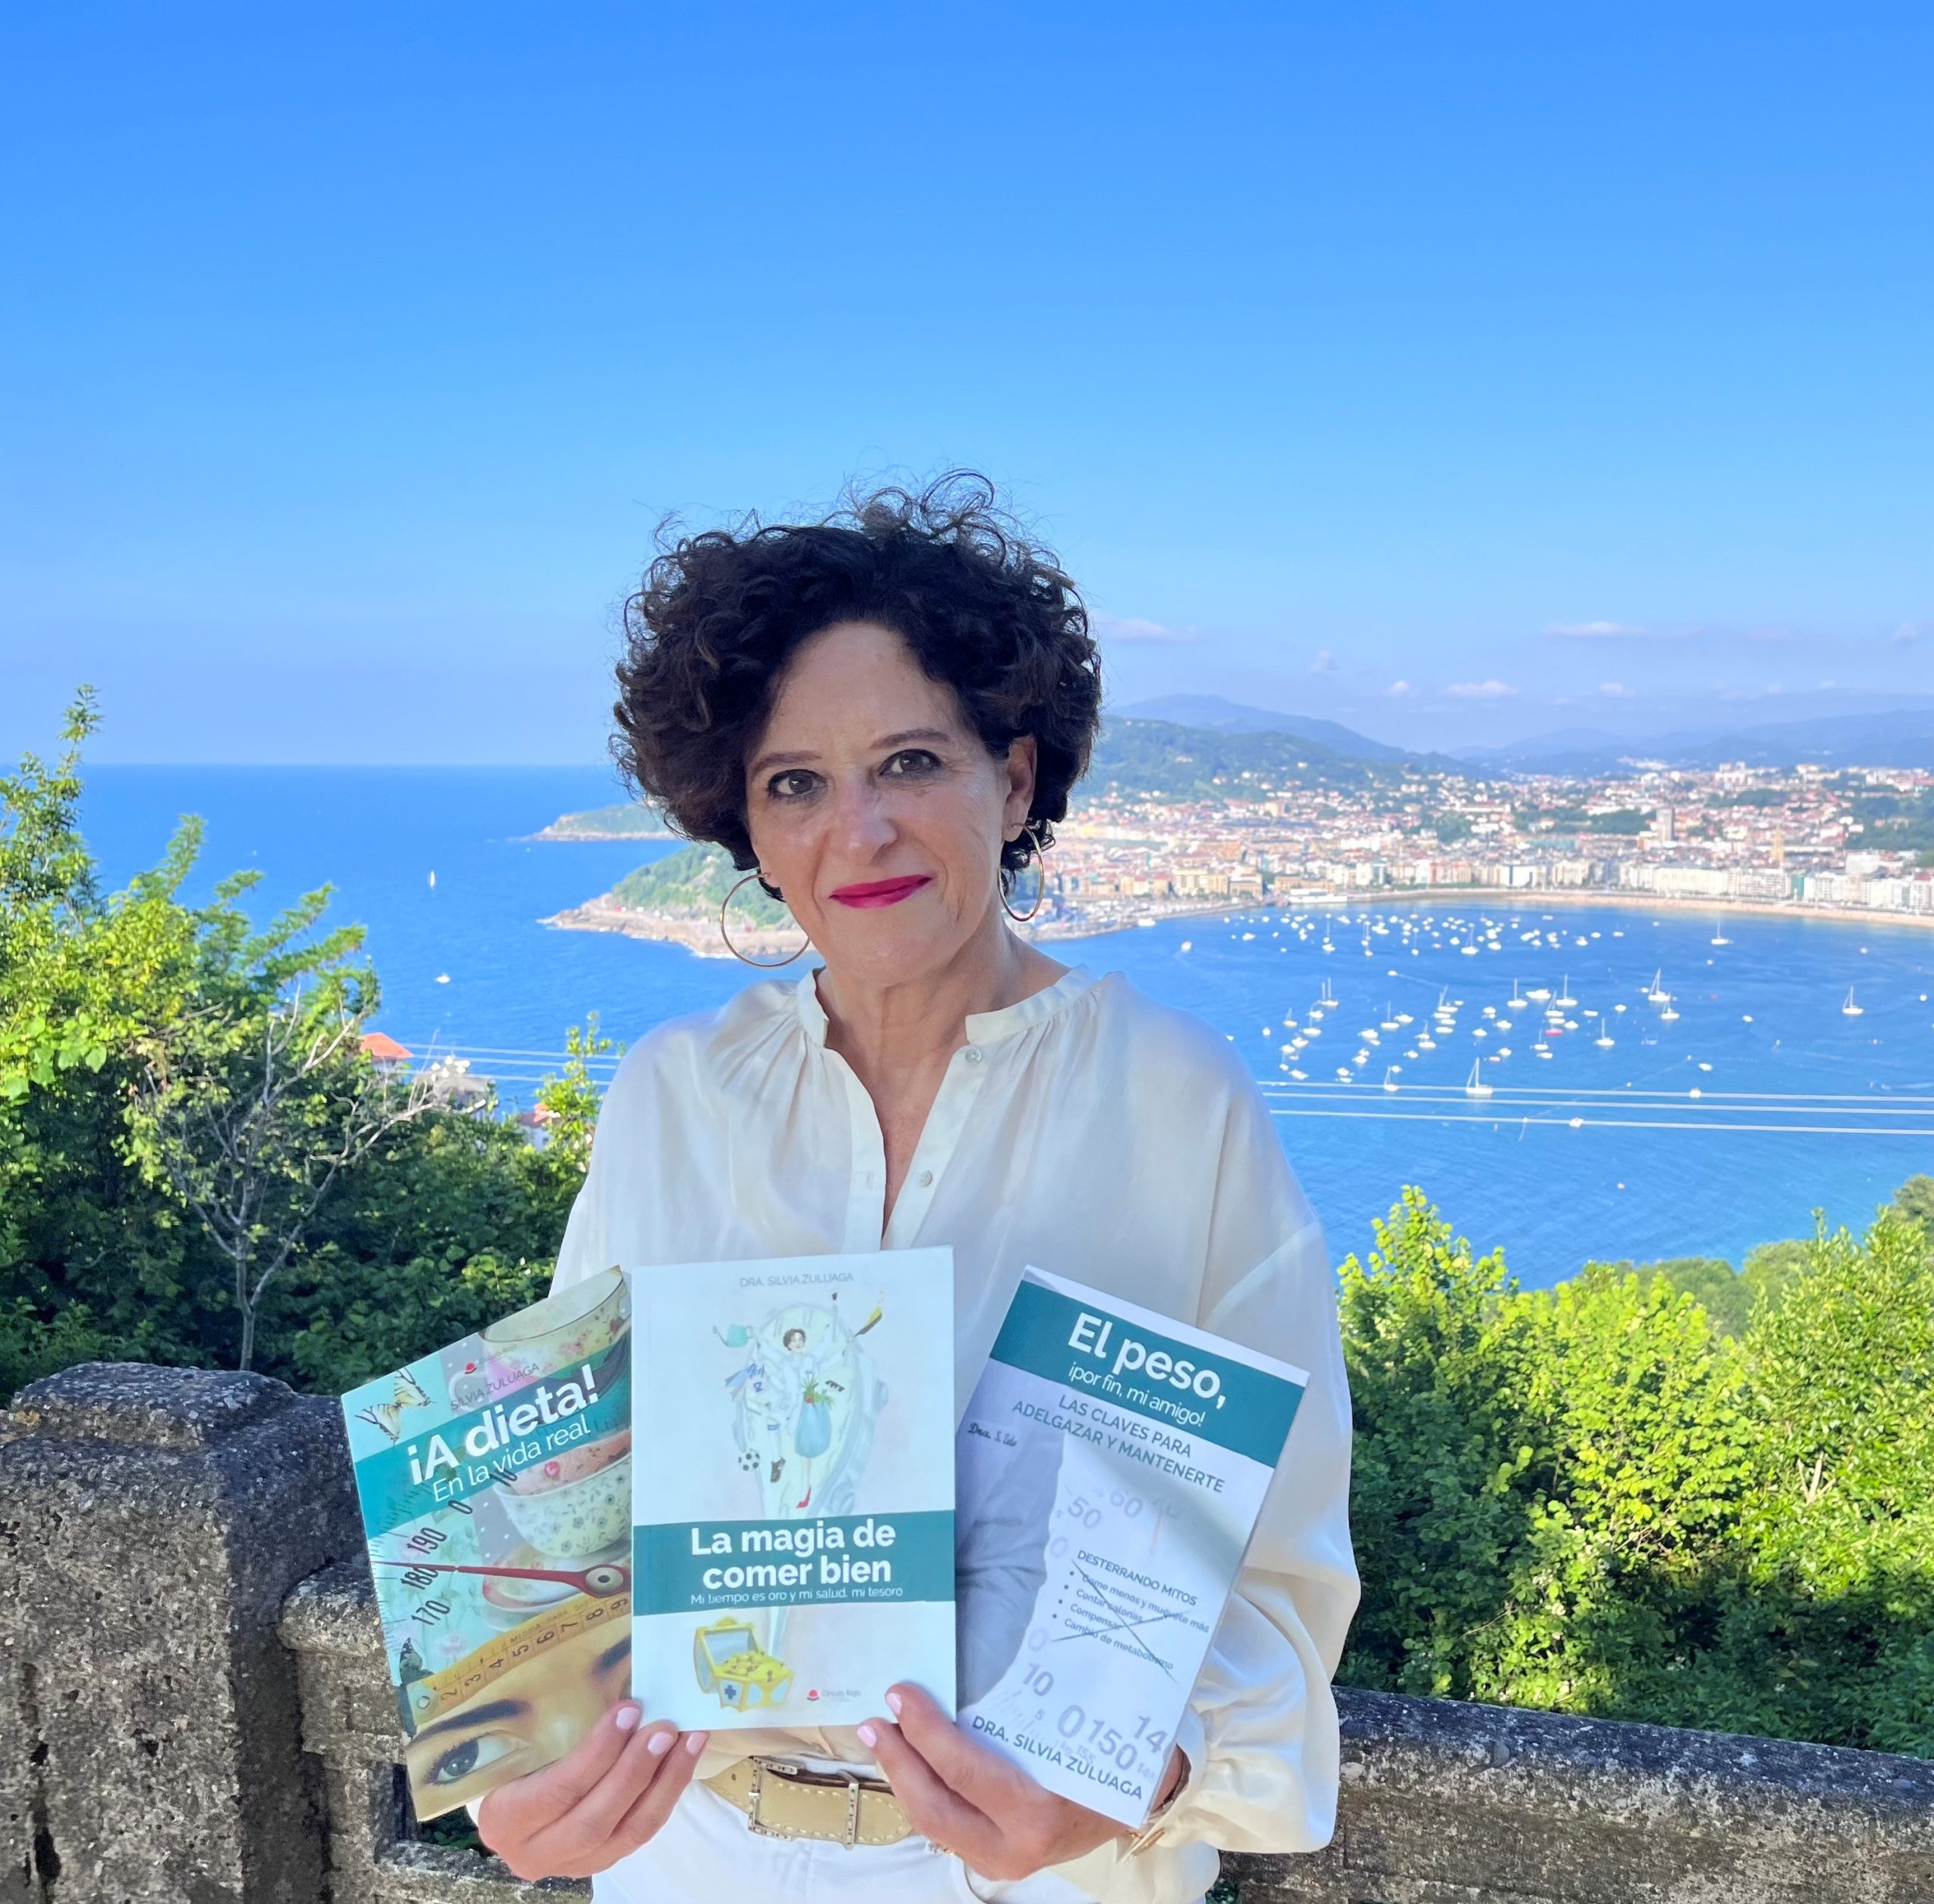 La Dra. Silvia Zuluaga acaba de publicar su último libro, «La magia de comer bien. Mi tiempo es oro y mi salud, mi tesoro».